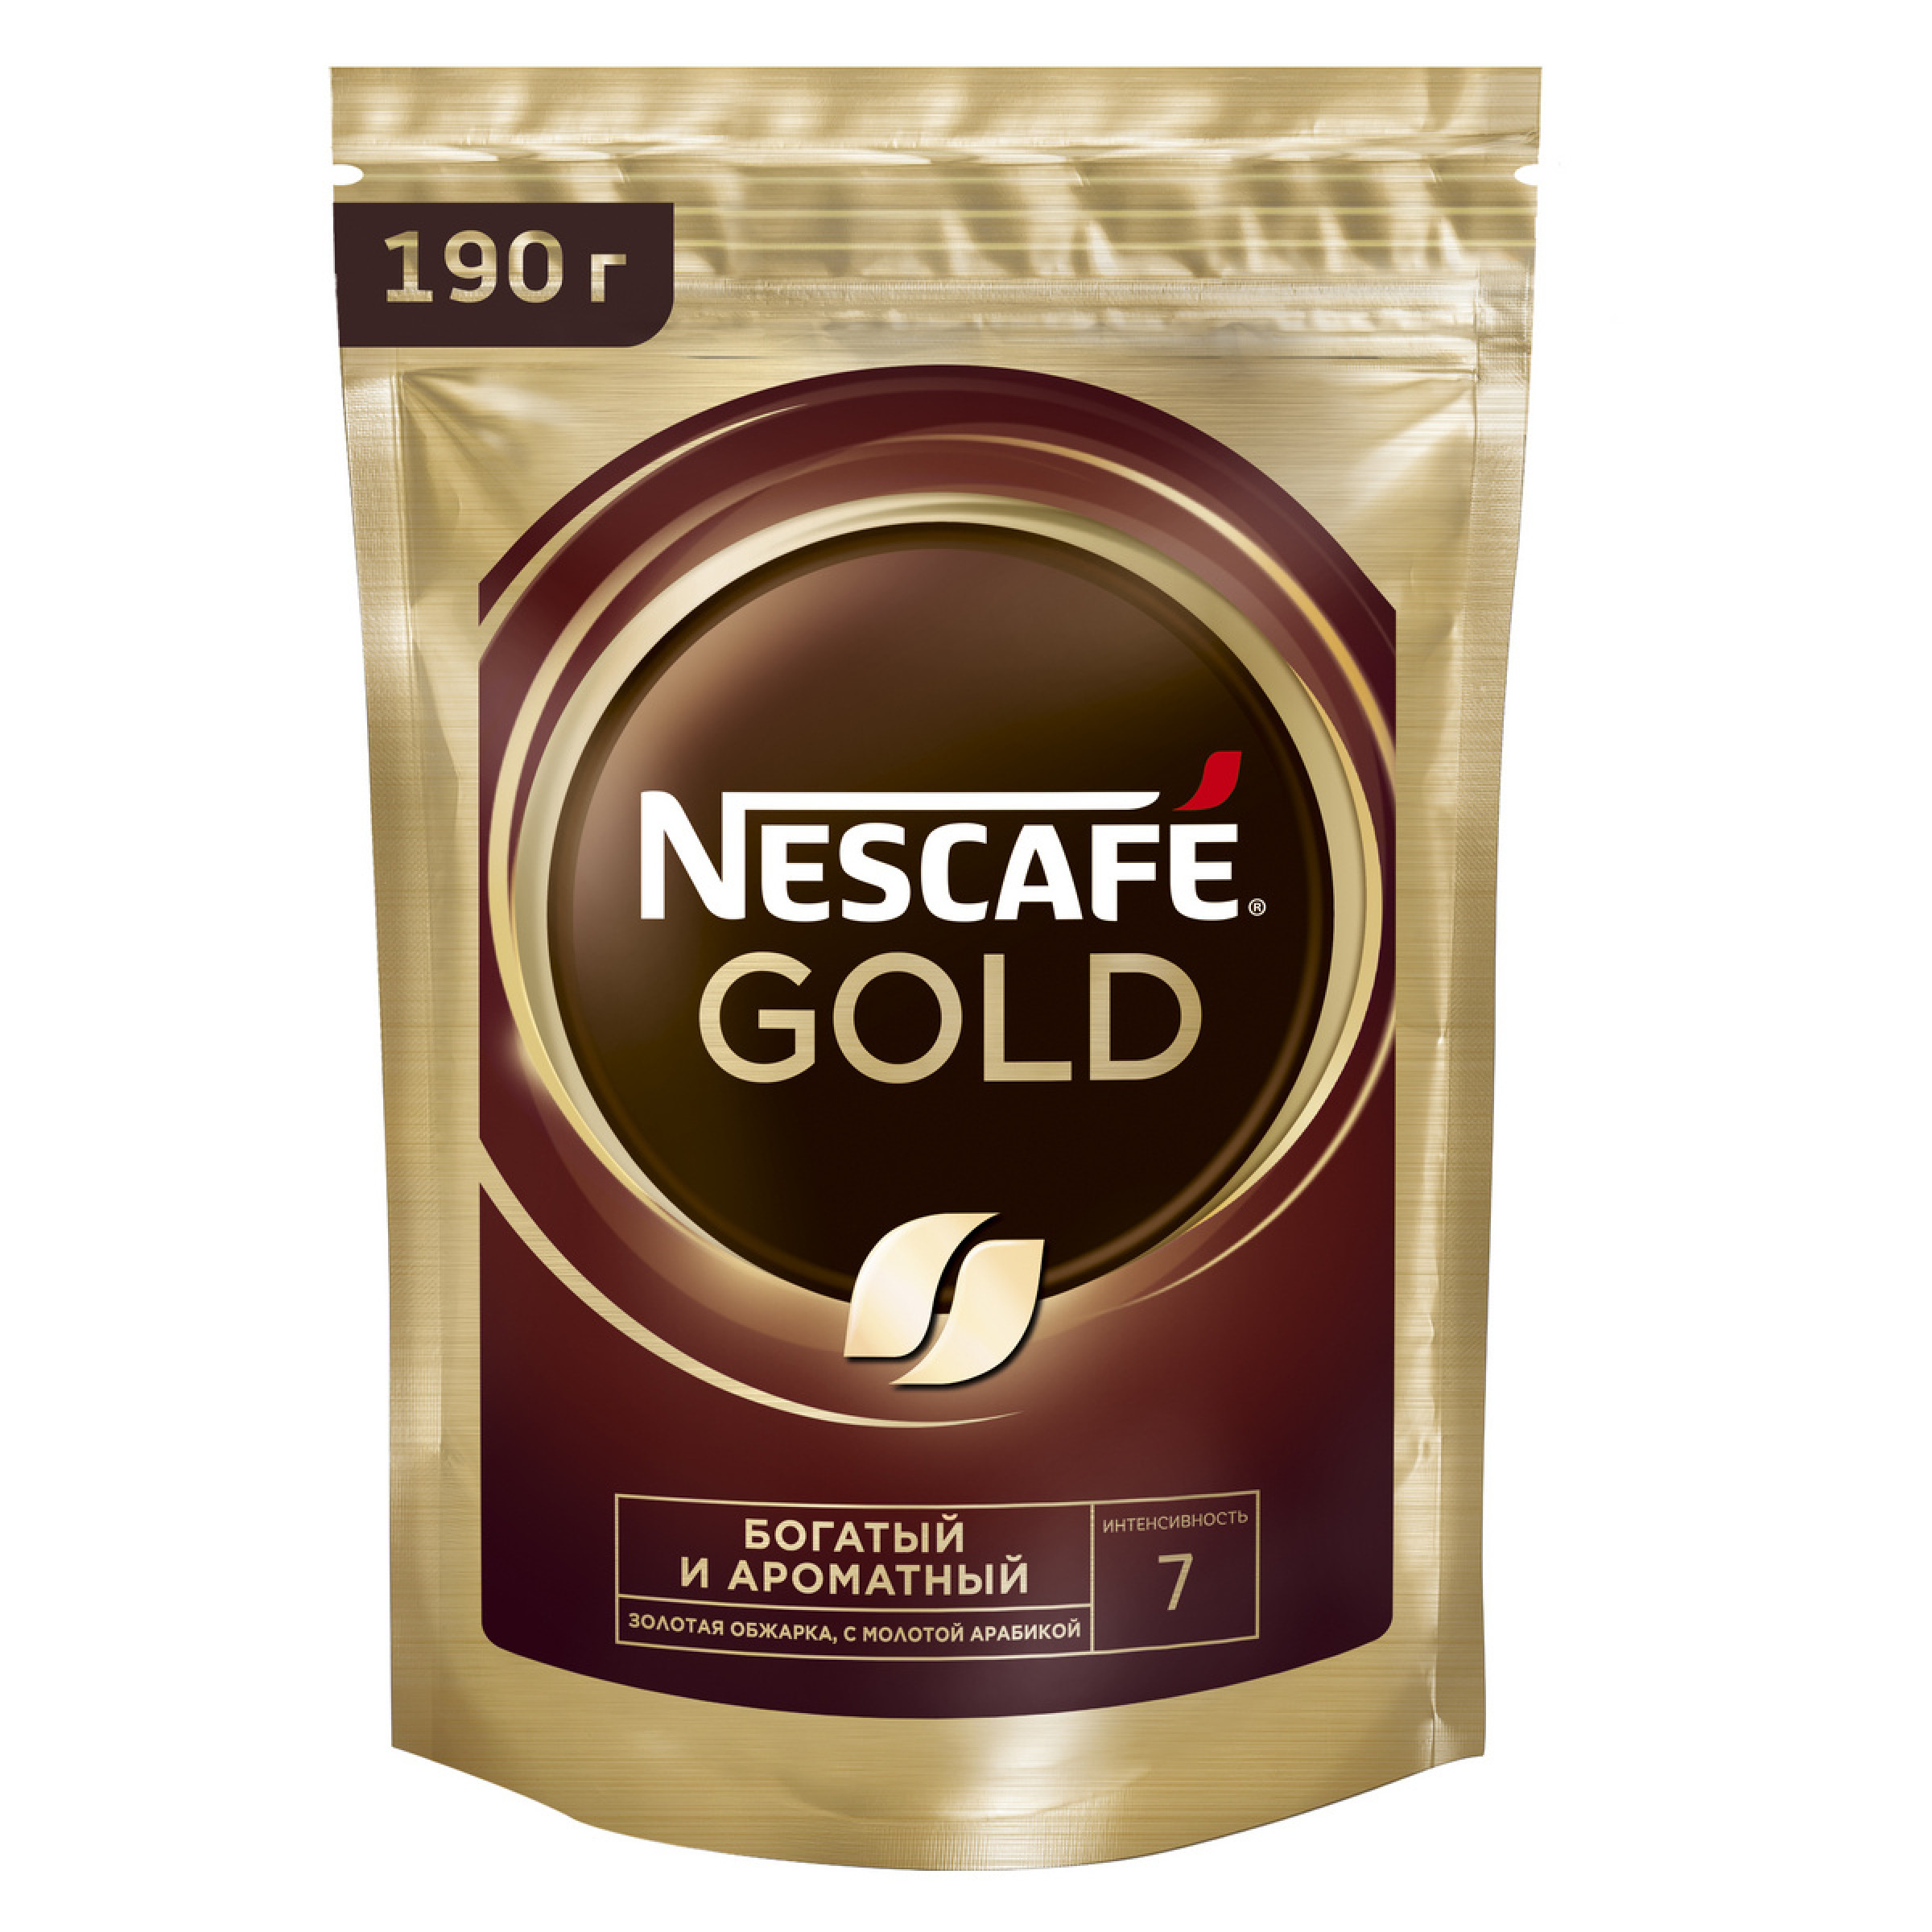 Растворимый сублимированный кофе Nescafe Gold 190 г